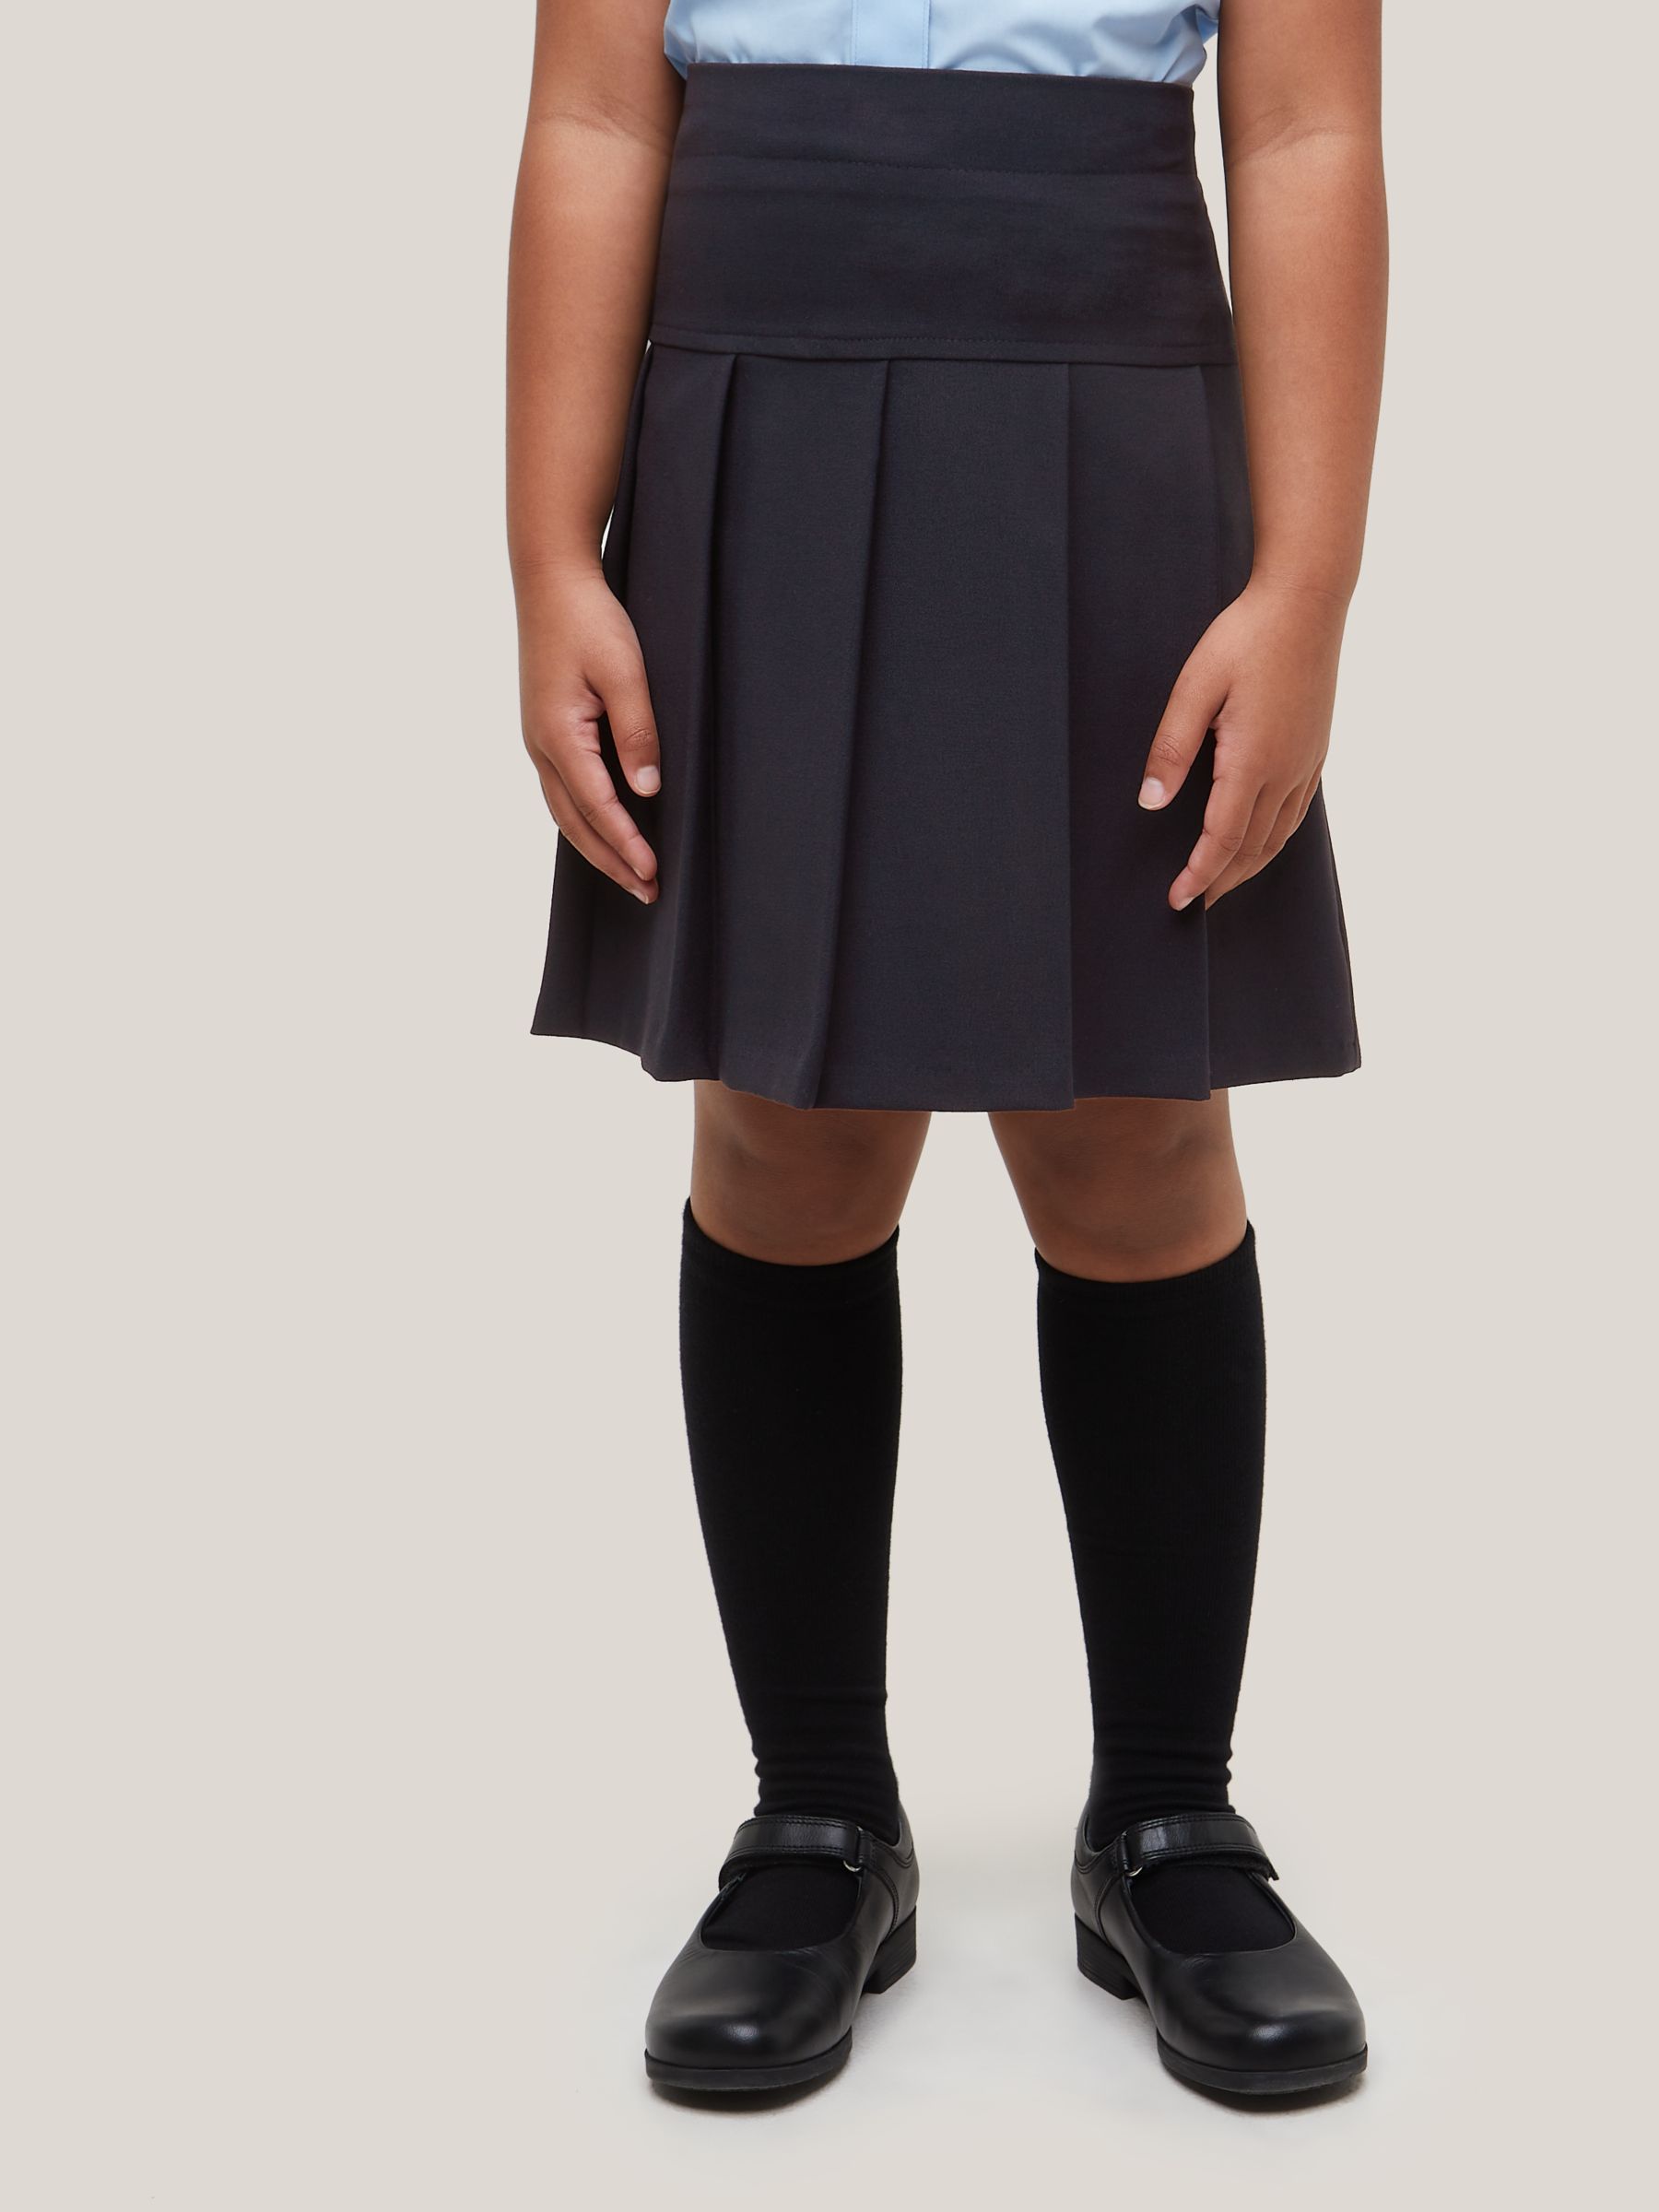 Trutex Black Senior Girls Stitch Down Pleat School Skirt